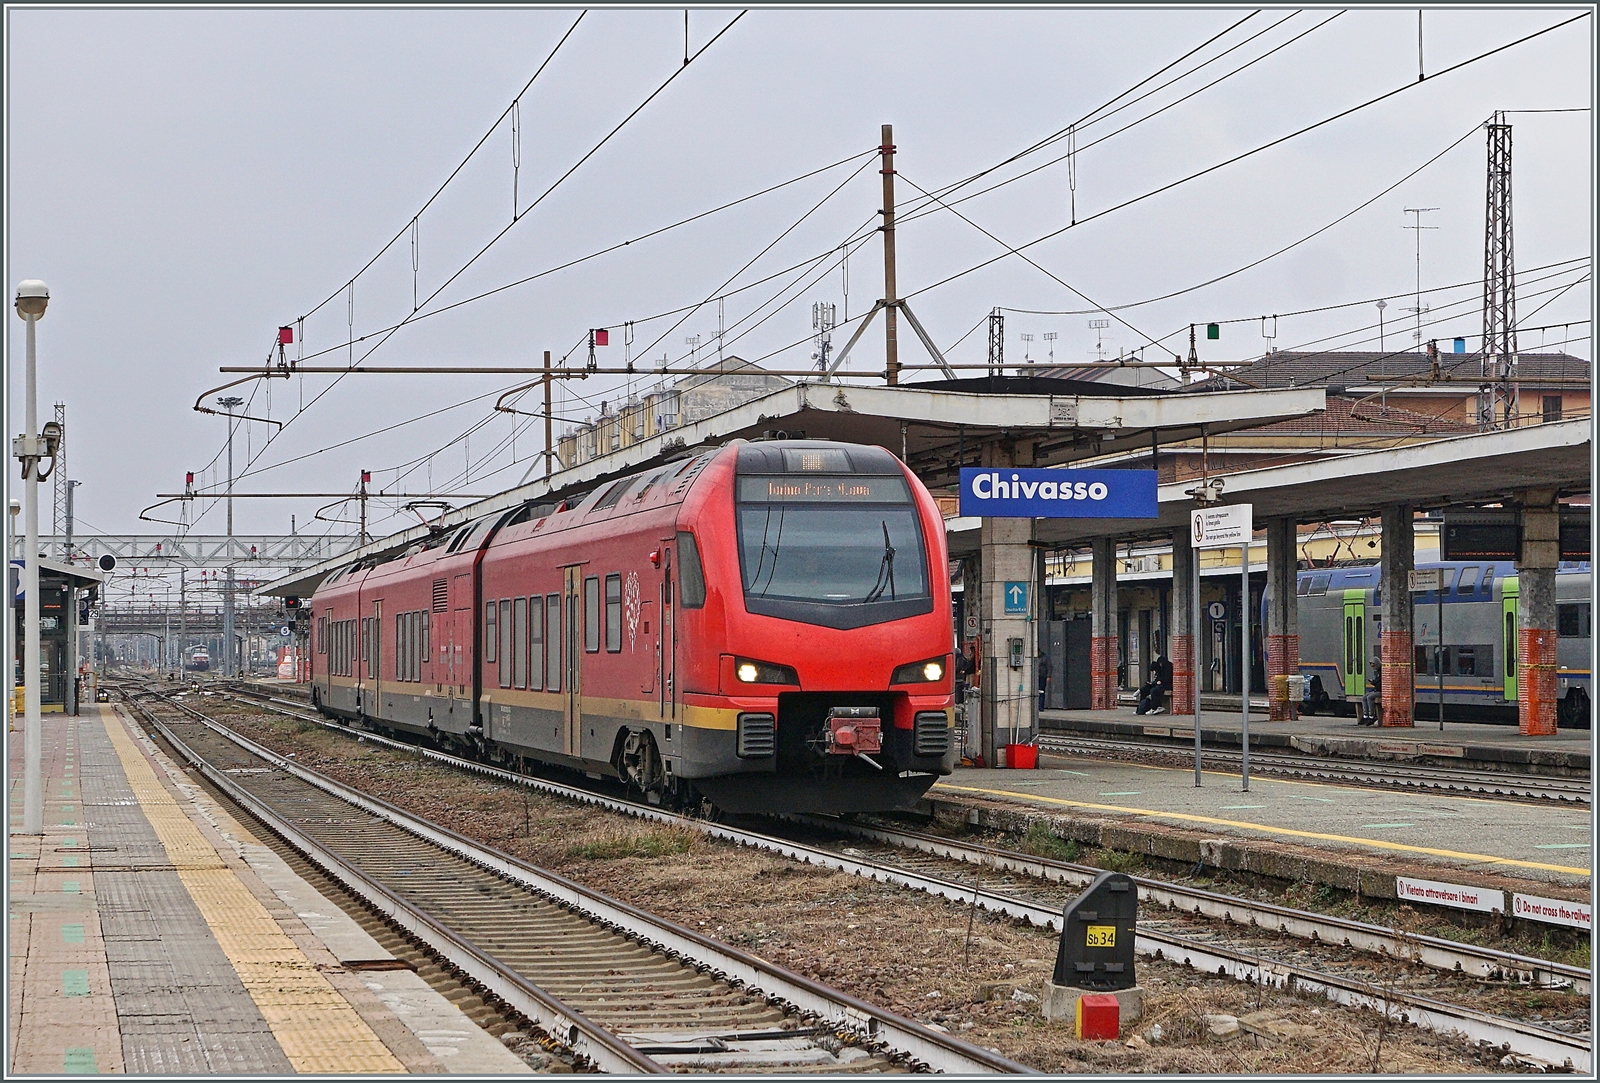 Der bimodulare FS Trenitalia BUM BTR 813 004 ist von Aosta in Chivasso  als RV VdA 2726 angekommen und fährt nun nach dem Richtungswechsel nach Torino Porta Nuova weiter. 
Der Zug fuhr mit Diesel von Aosta bis Ivrea und ab dort elektrisch.

24. Februar 2023